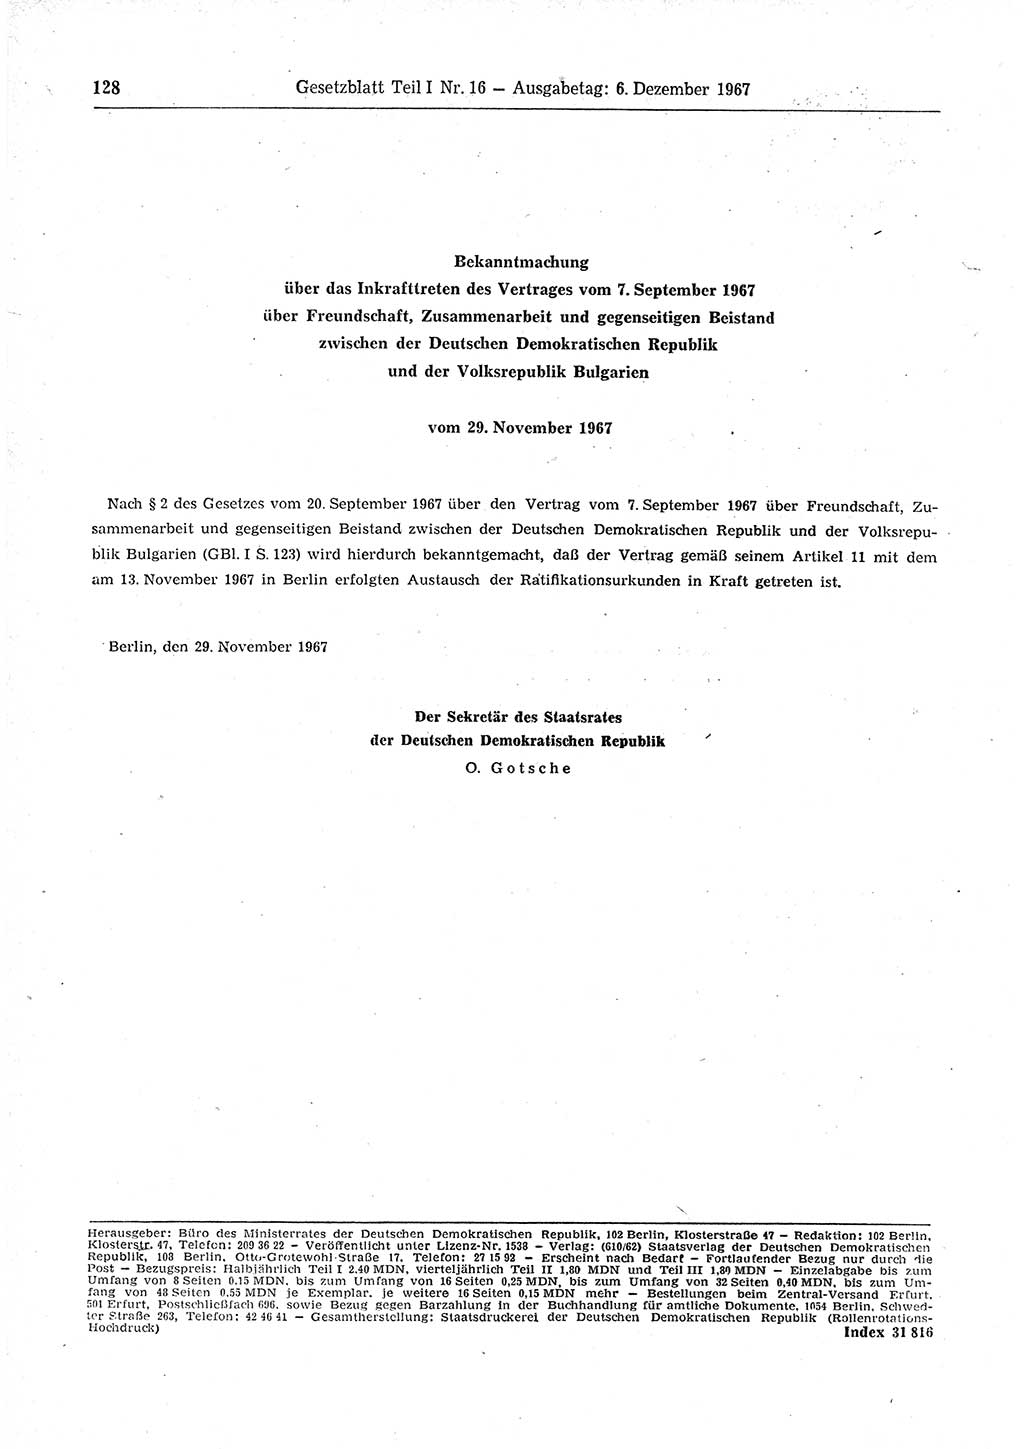 Gesetzblatt (GBl.) der Deutschen Demokratischen Republik (DDR) Teil Ⅰ 1967, Seite 128 (GBl. DDR Ⅰ 1967, S. 128)